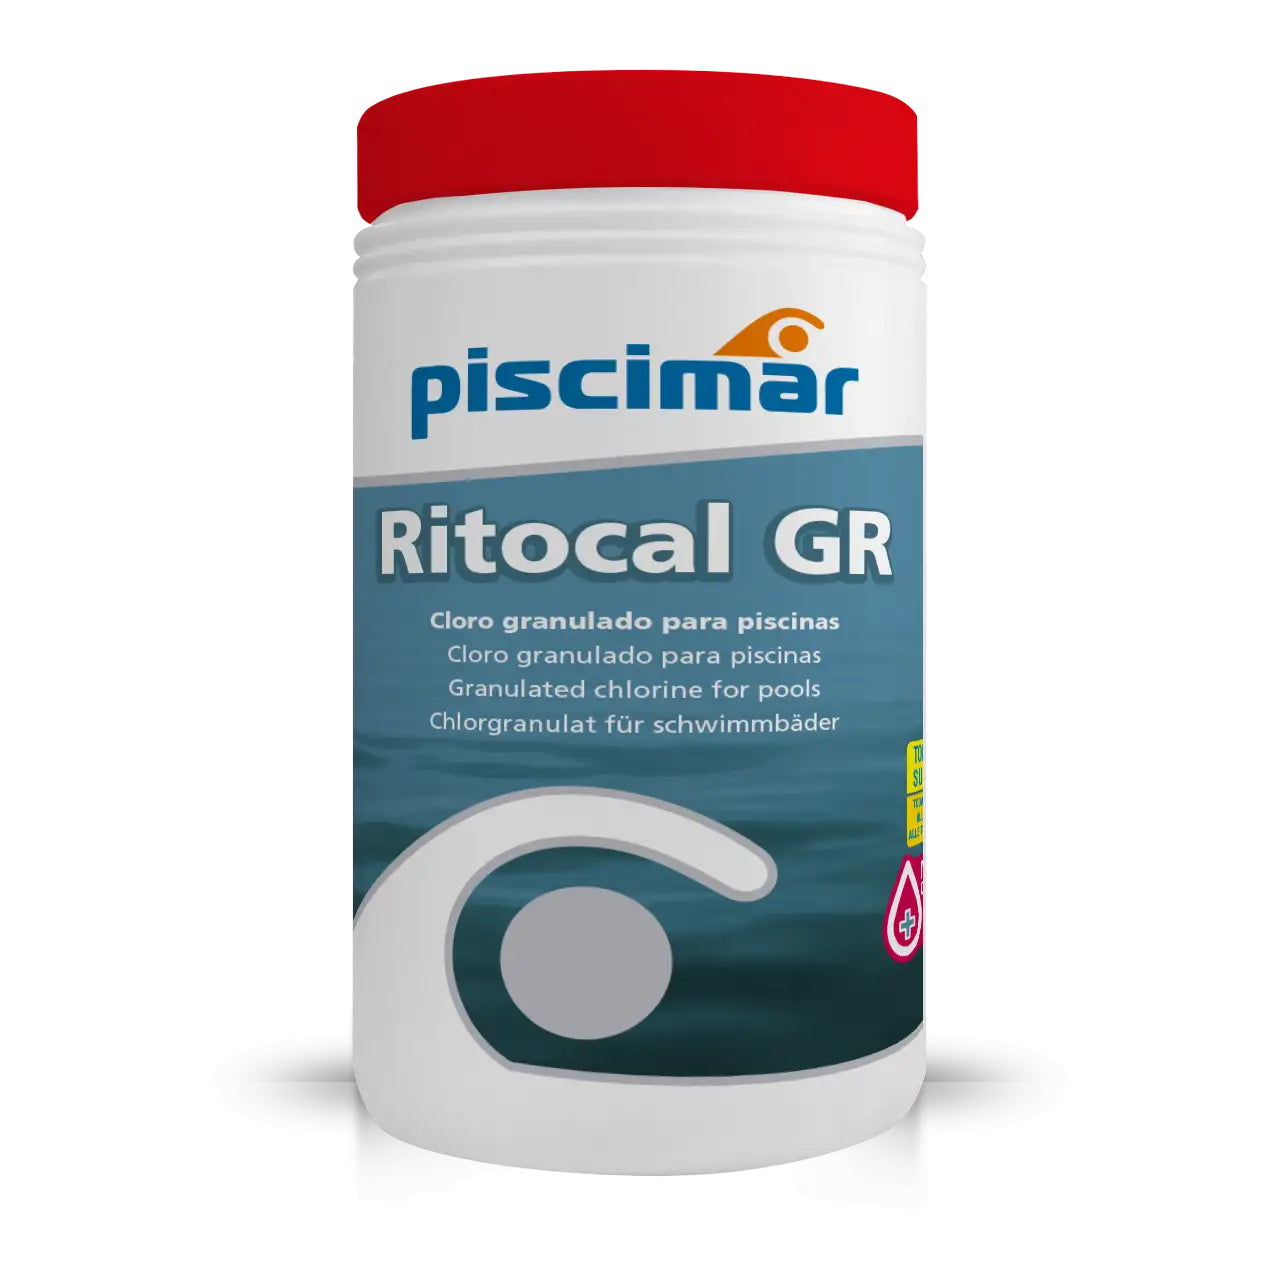 PM-531 RITOCAL GR (HIPOCLORITO CÁLCICO GRANULADO) - IOT-POOL